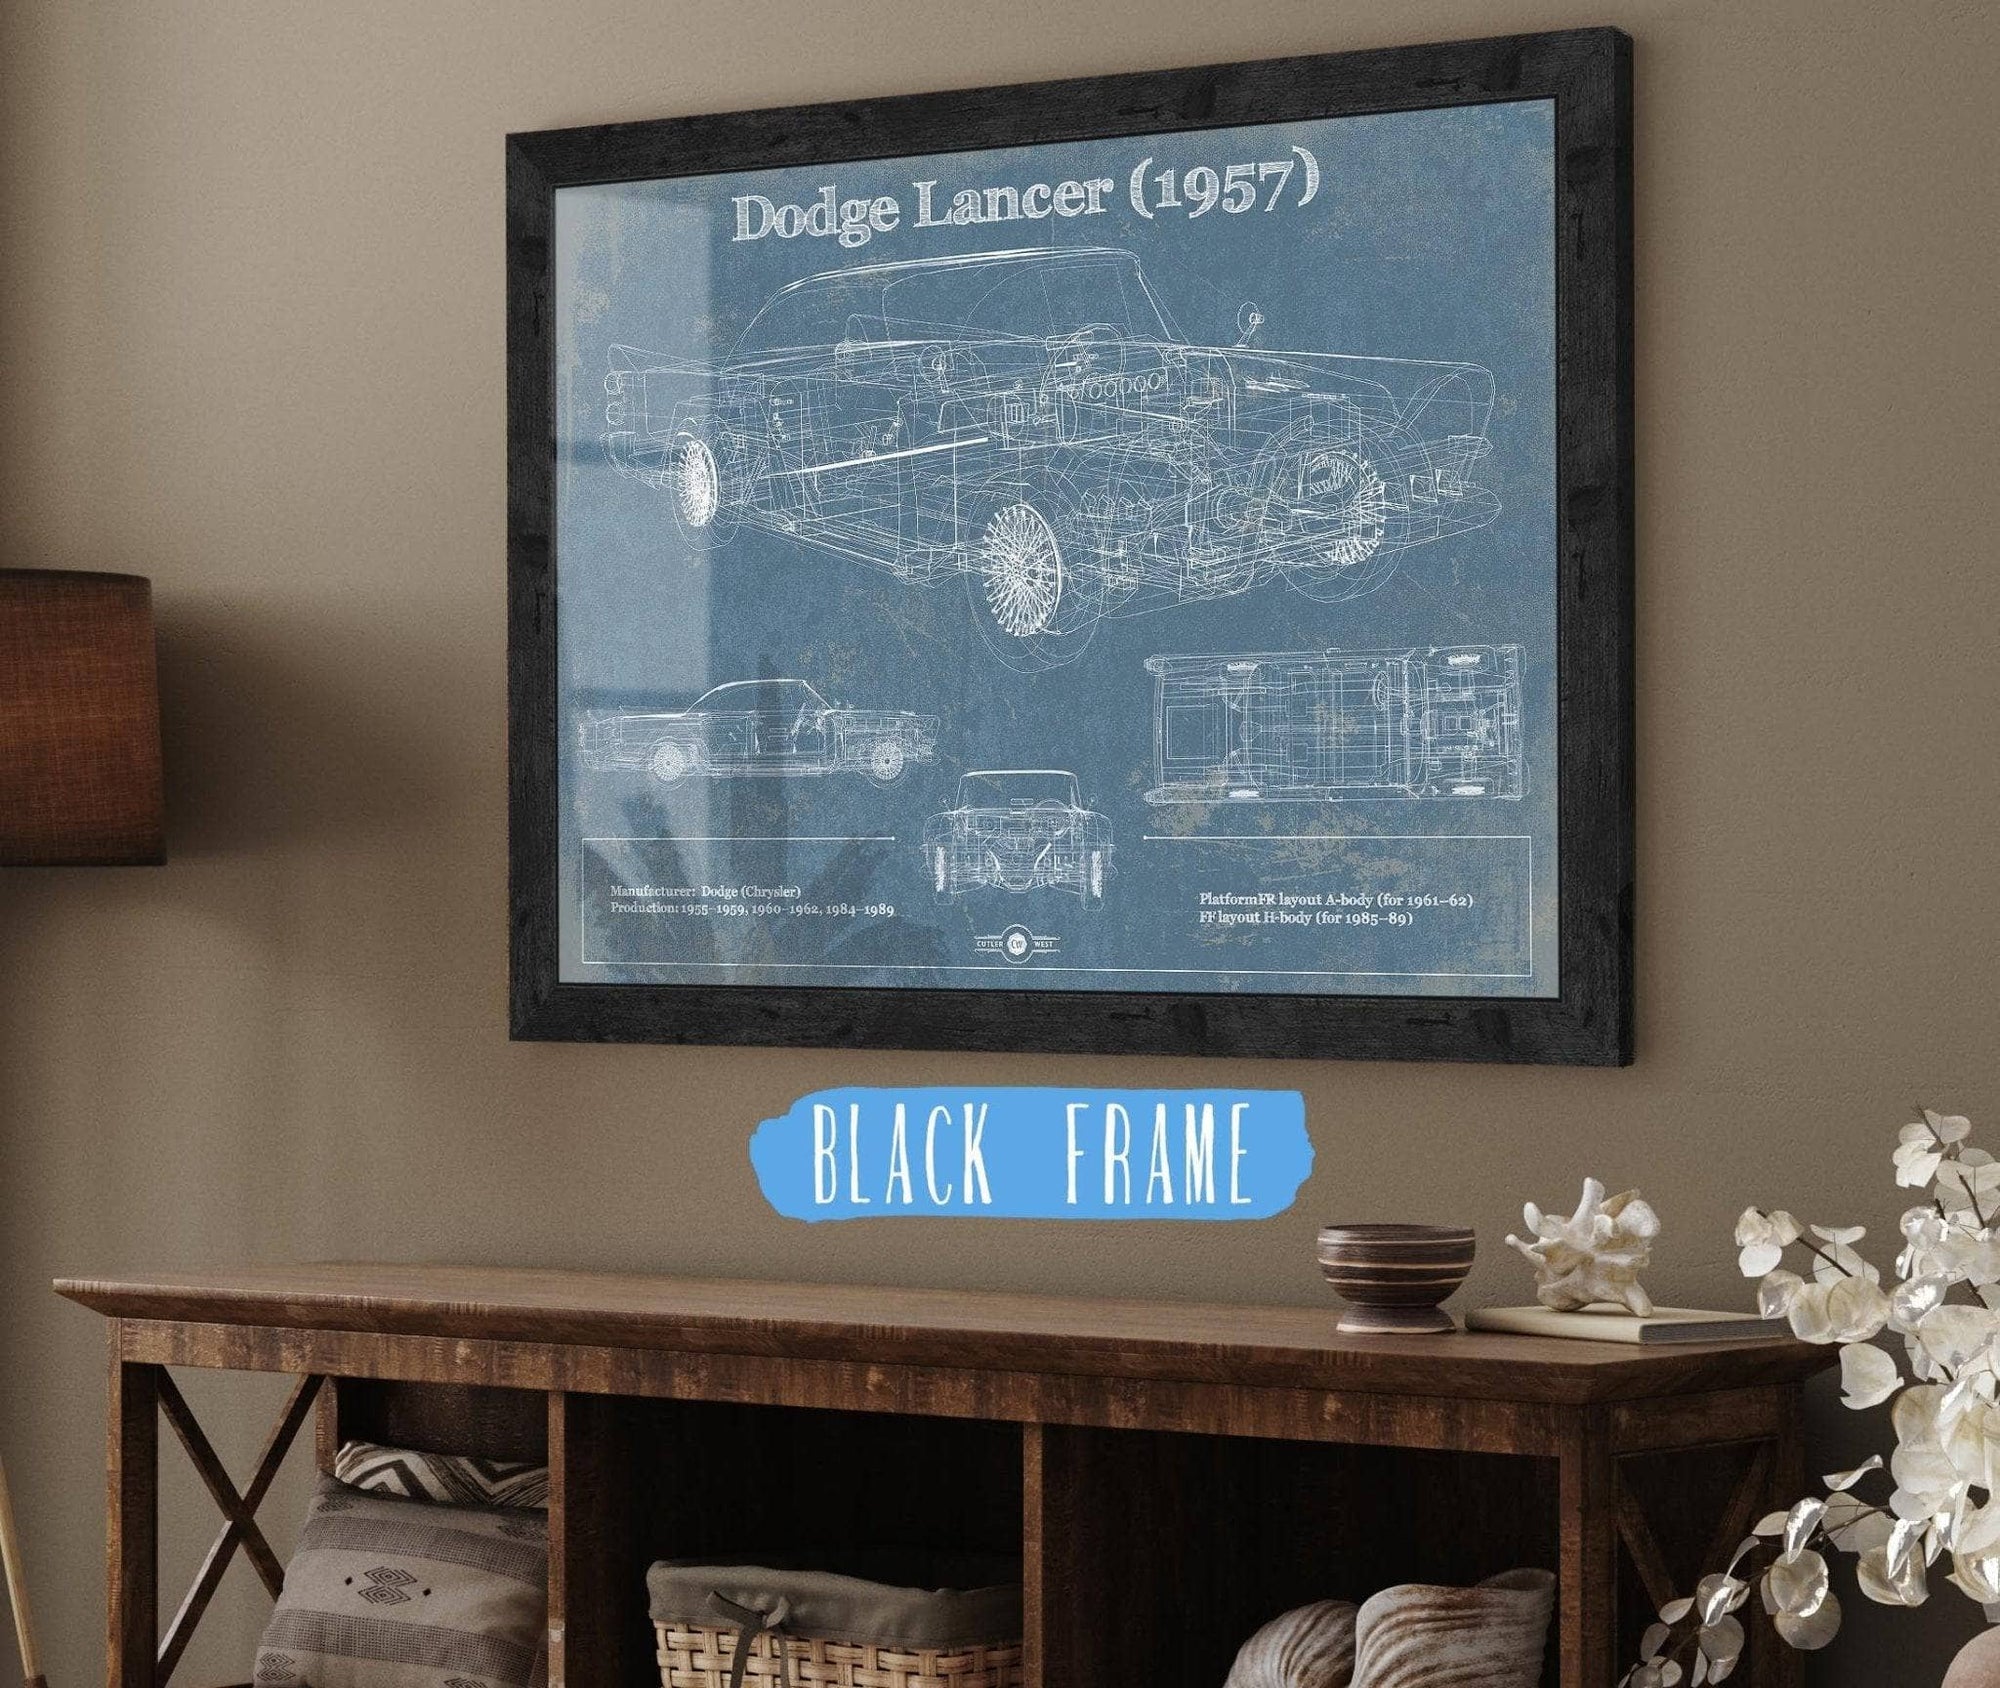 Cutler West Dodge Collection 14" x 11" / Black Frame Dodge Lancer 1957 Vintage Blueprint Auto Print 845000187_58836